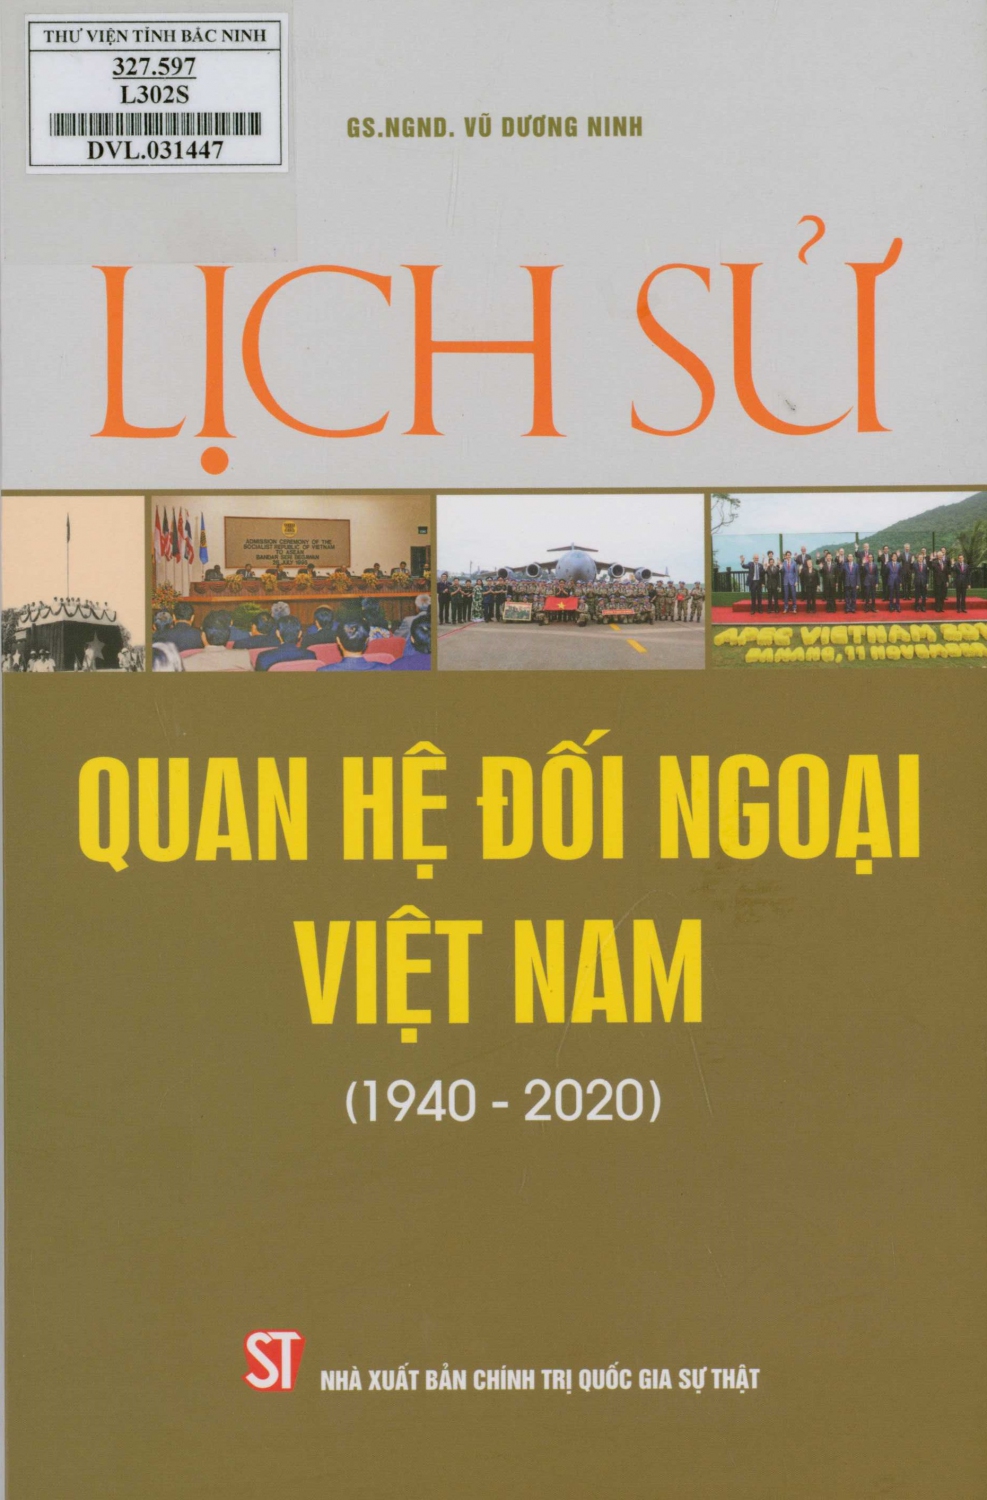 Lịch sử quan hệ đối ngoại Việt Nam (1940 - 2020)